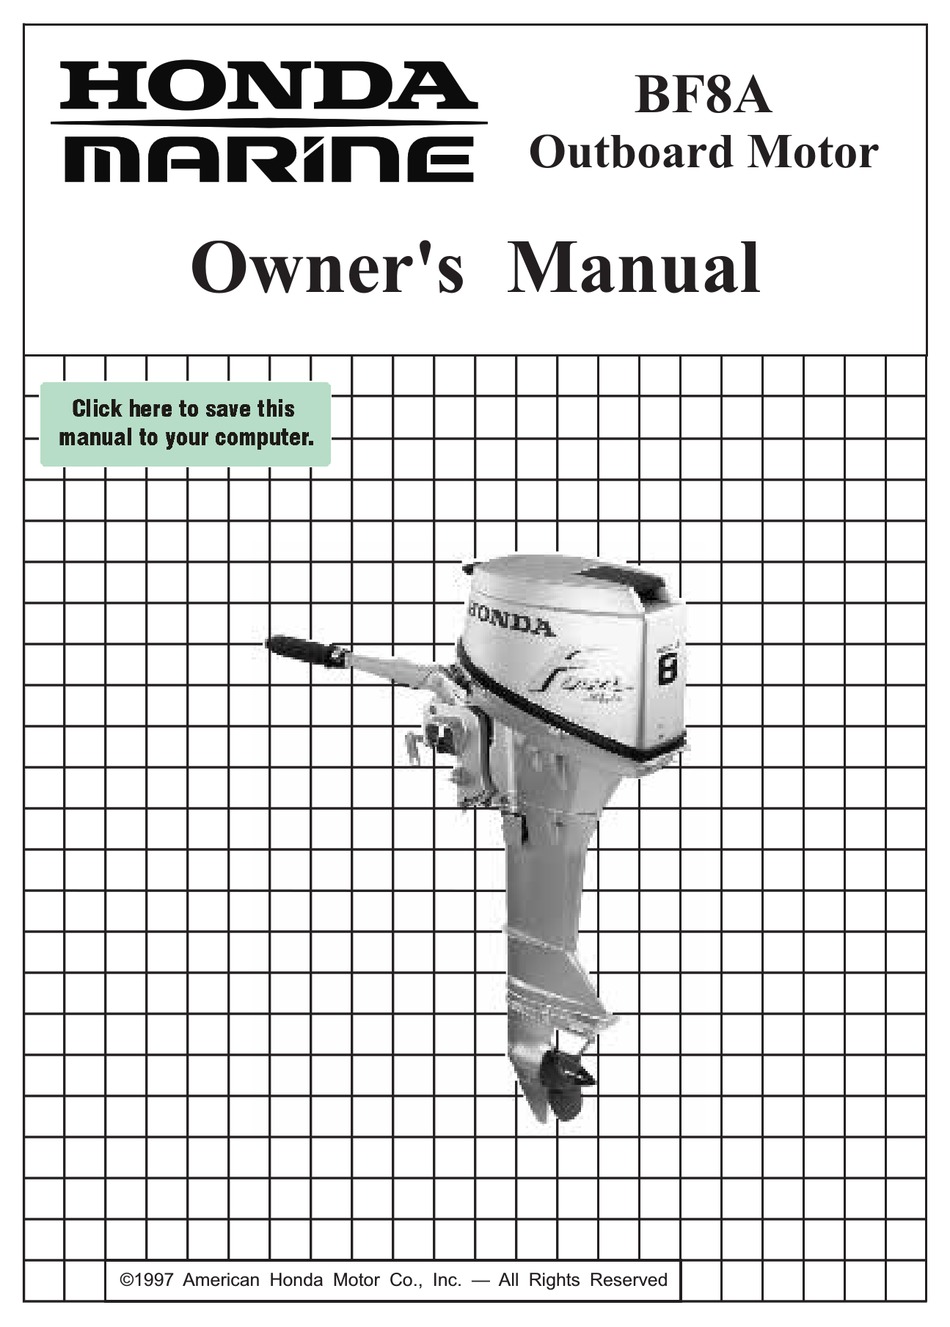 HONDA BF8A OWNER'S MANUAL Pdf Download | ManualsLib